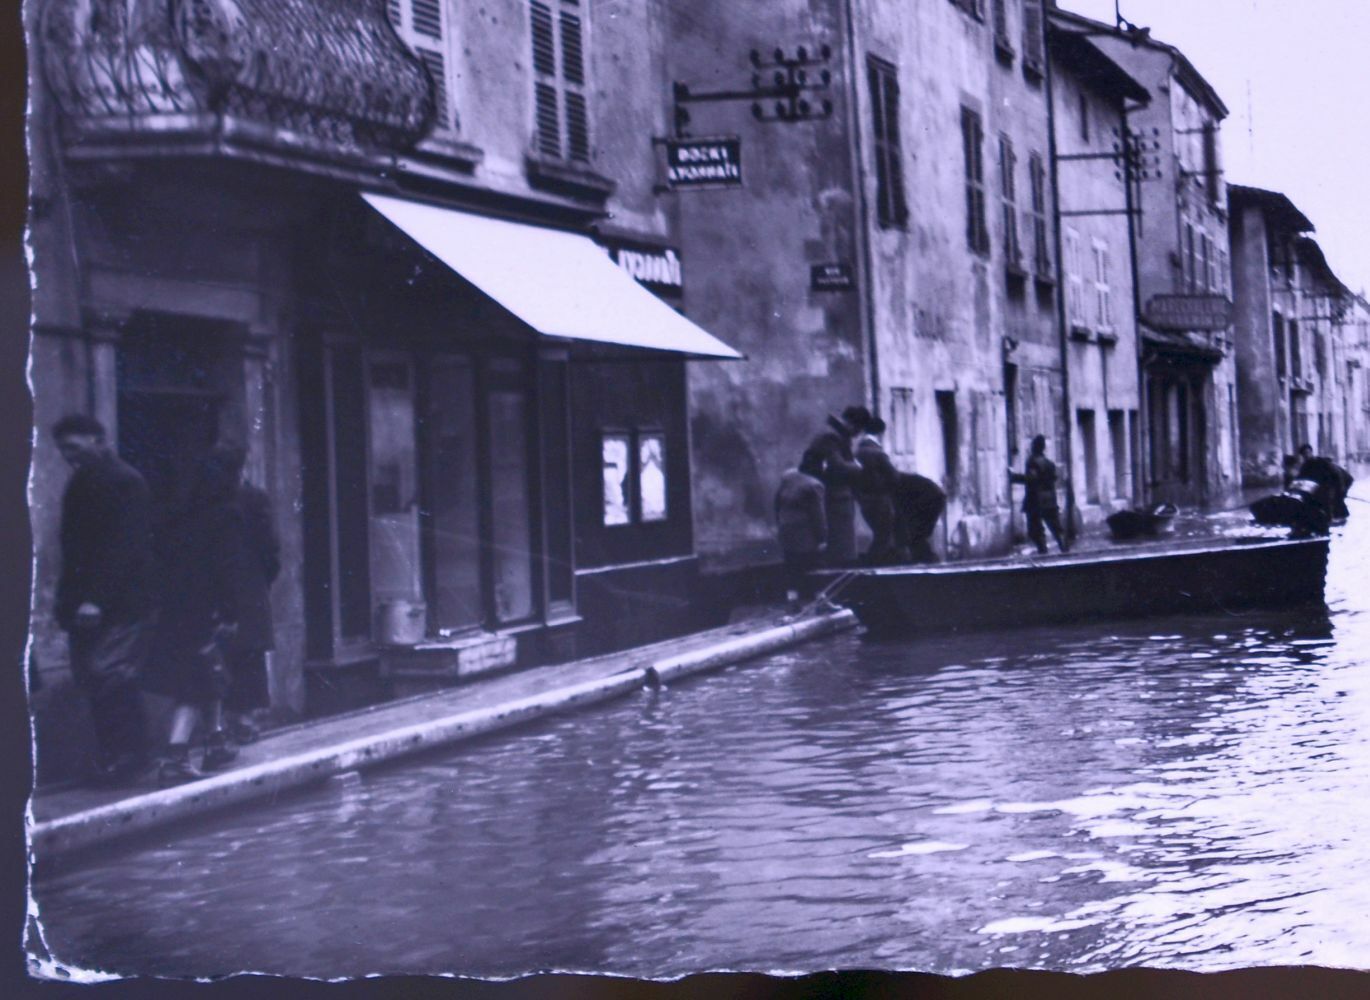 BELLEVILLE-SUR-SAONE rue V. Hugo FLOODS 1950 PHOTO CPSM POSTCARD RHÔNE